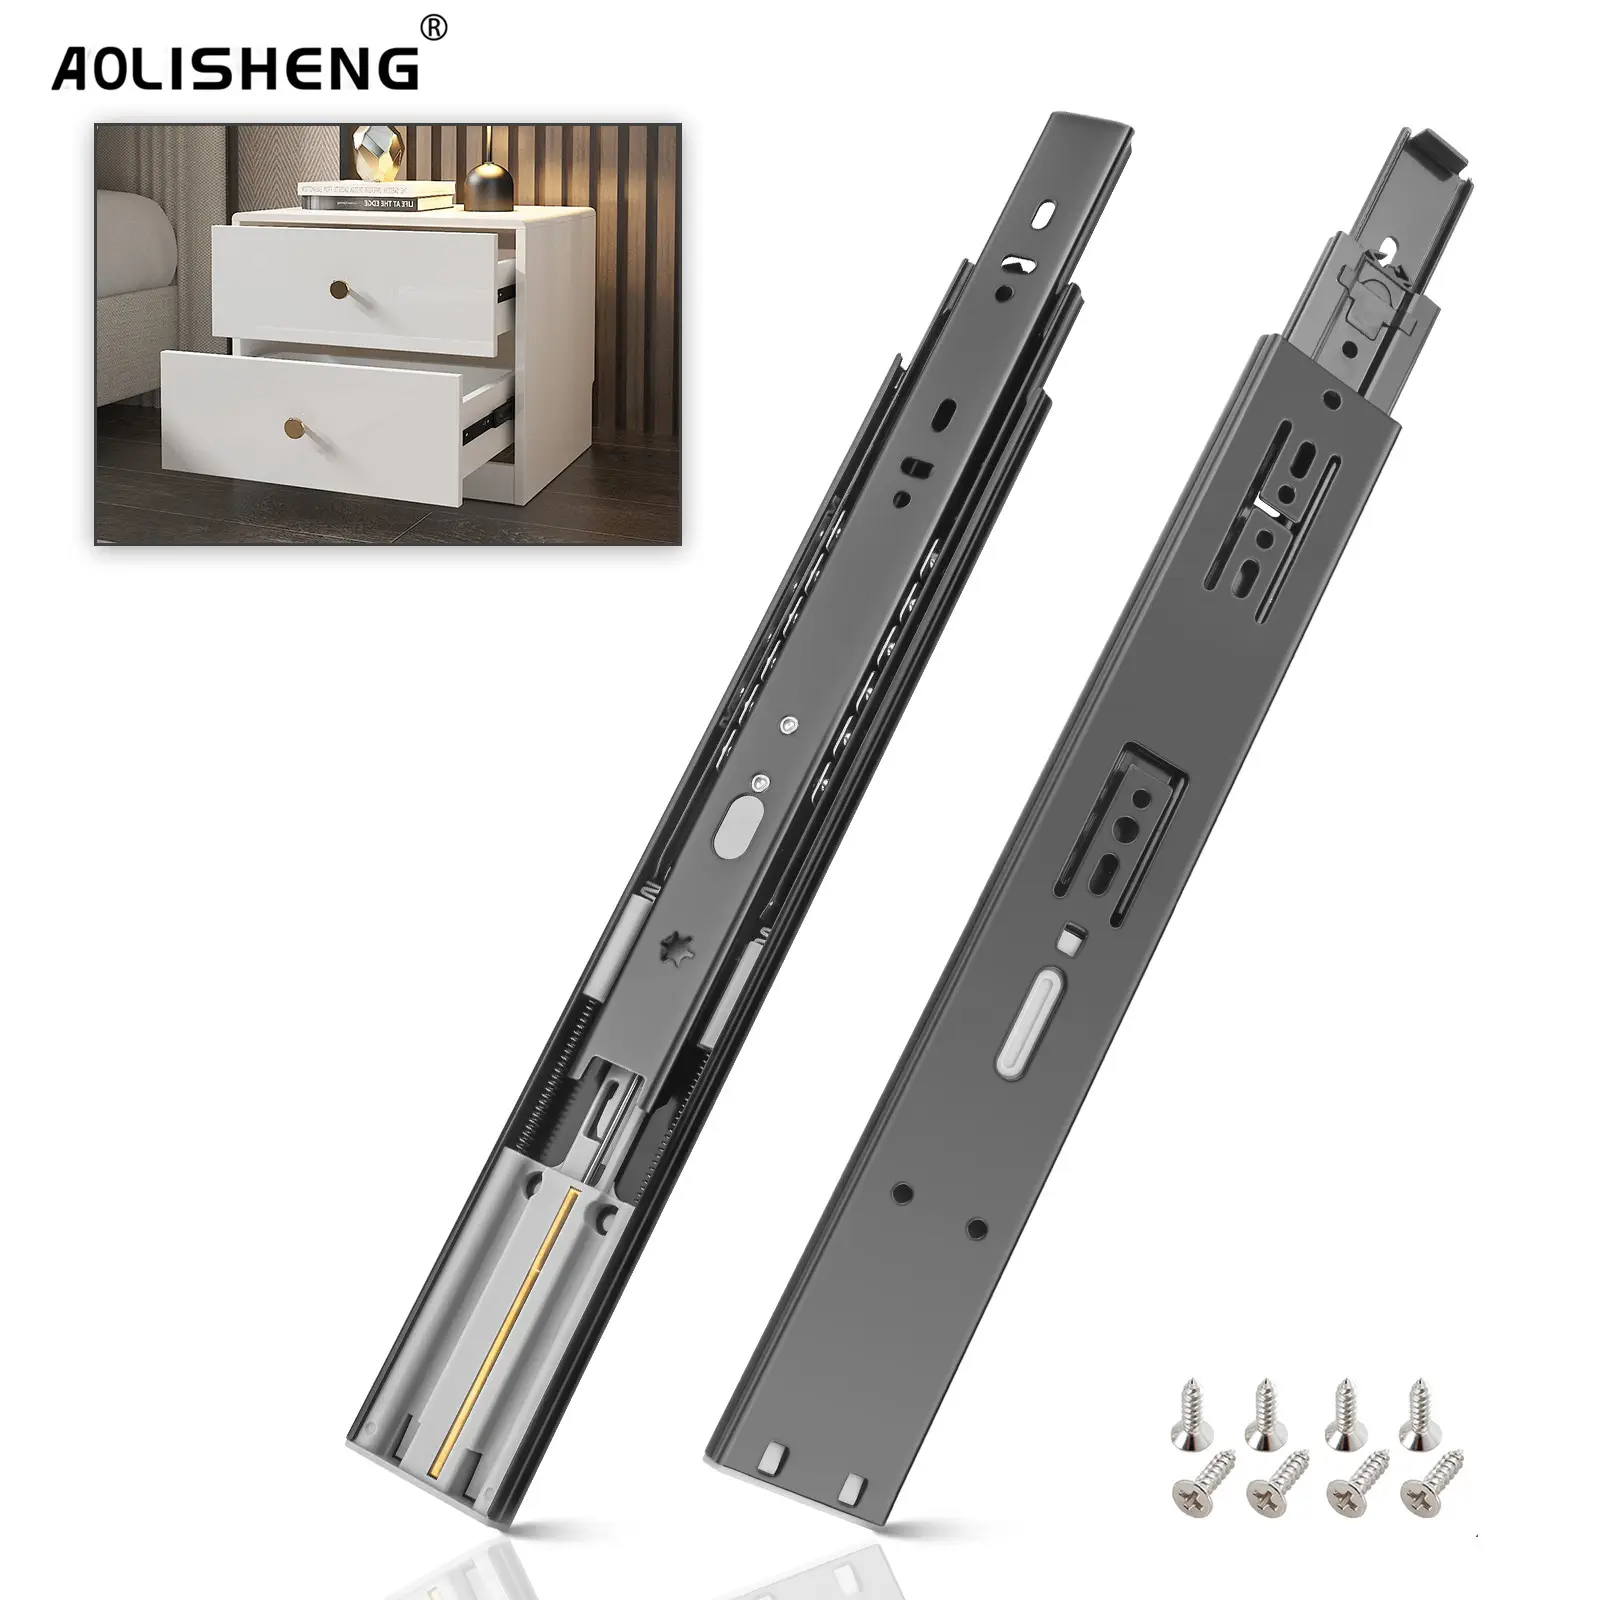 AOLISHENG – glissières de tiroir à fermeture douce, roulement à billes, fermeture automatique, glissières de tiroir d'armoire, Rail de tiroir de cuisine